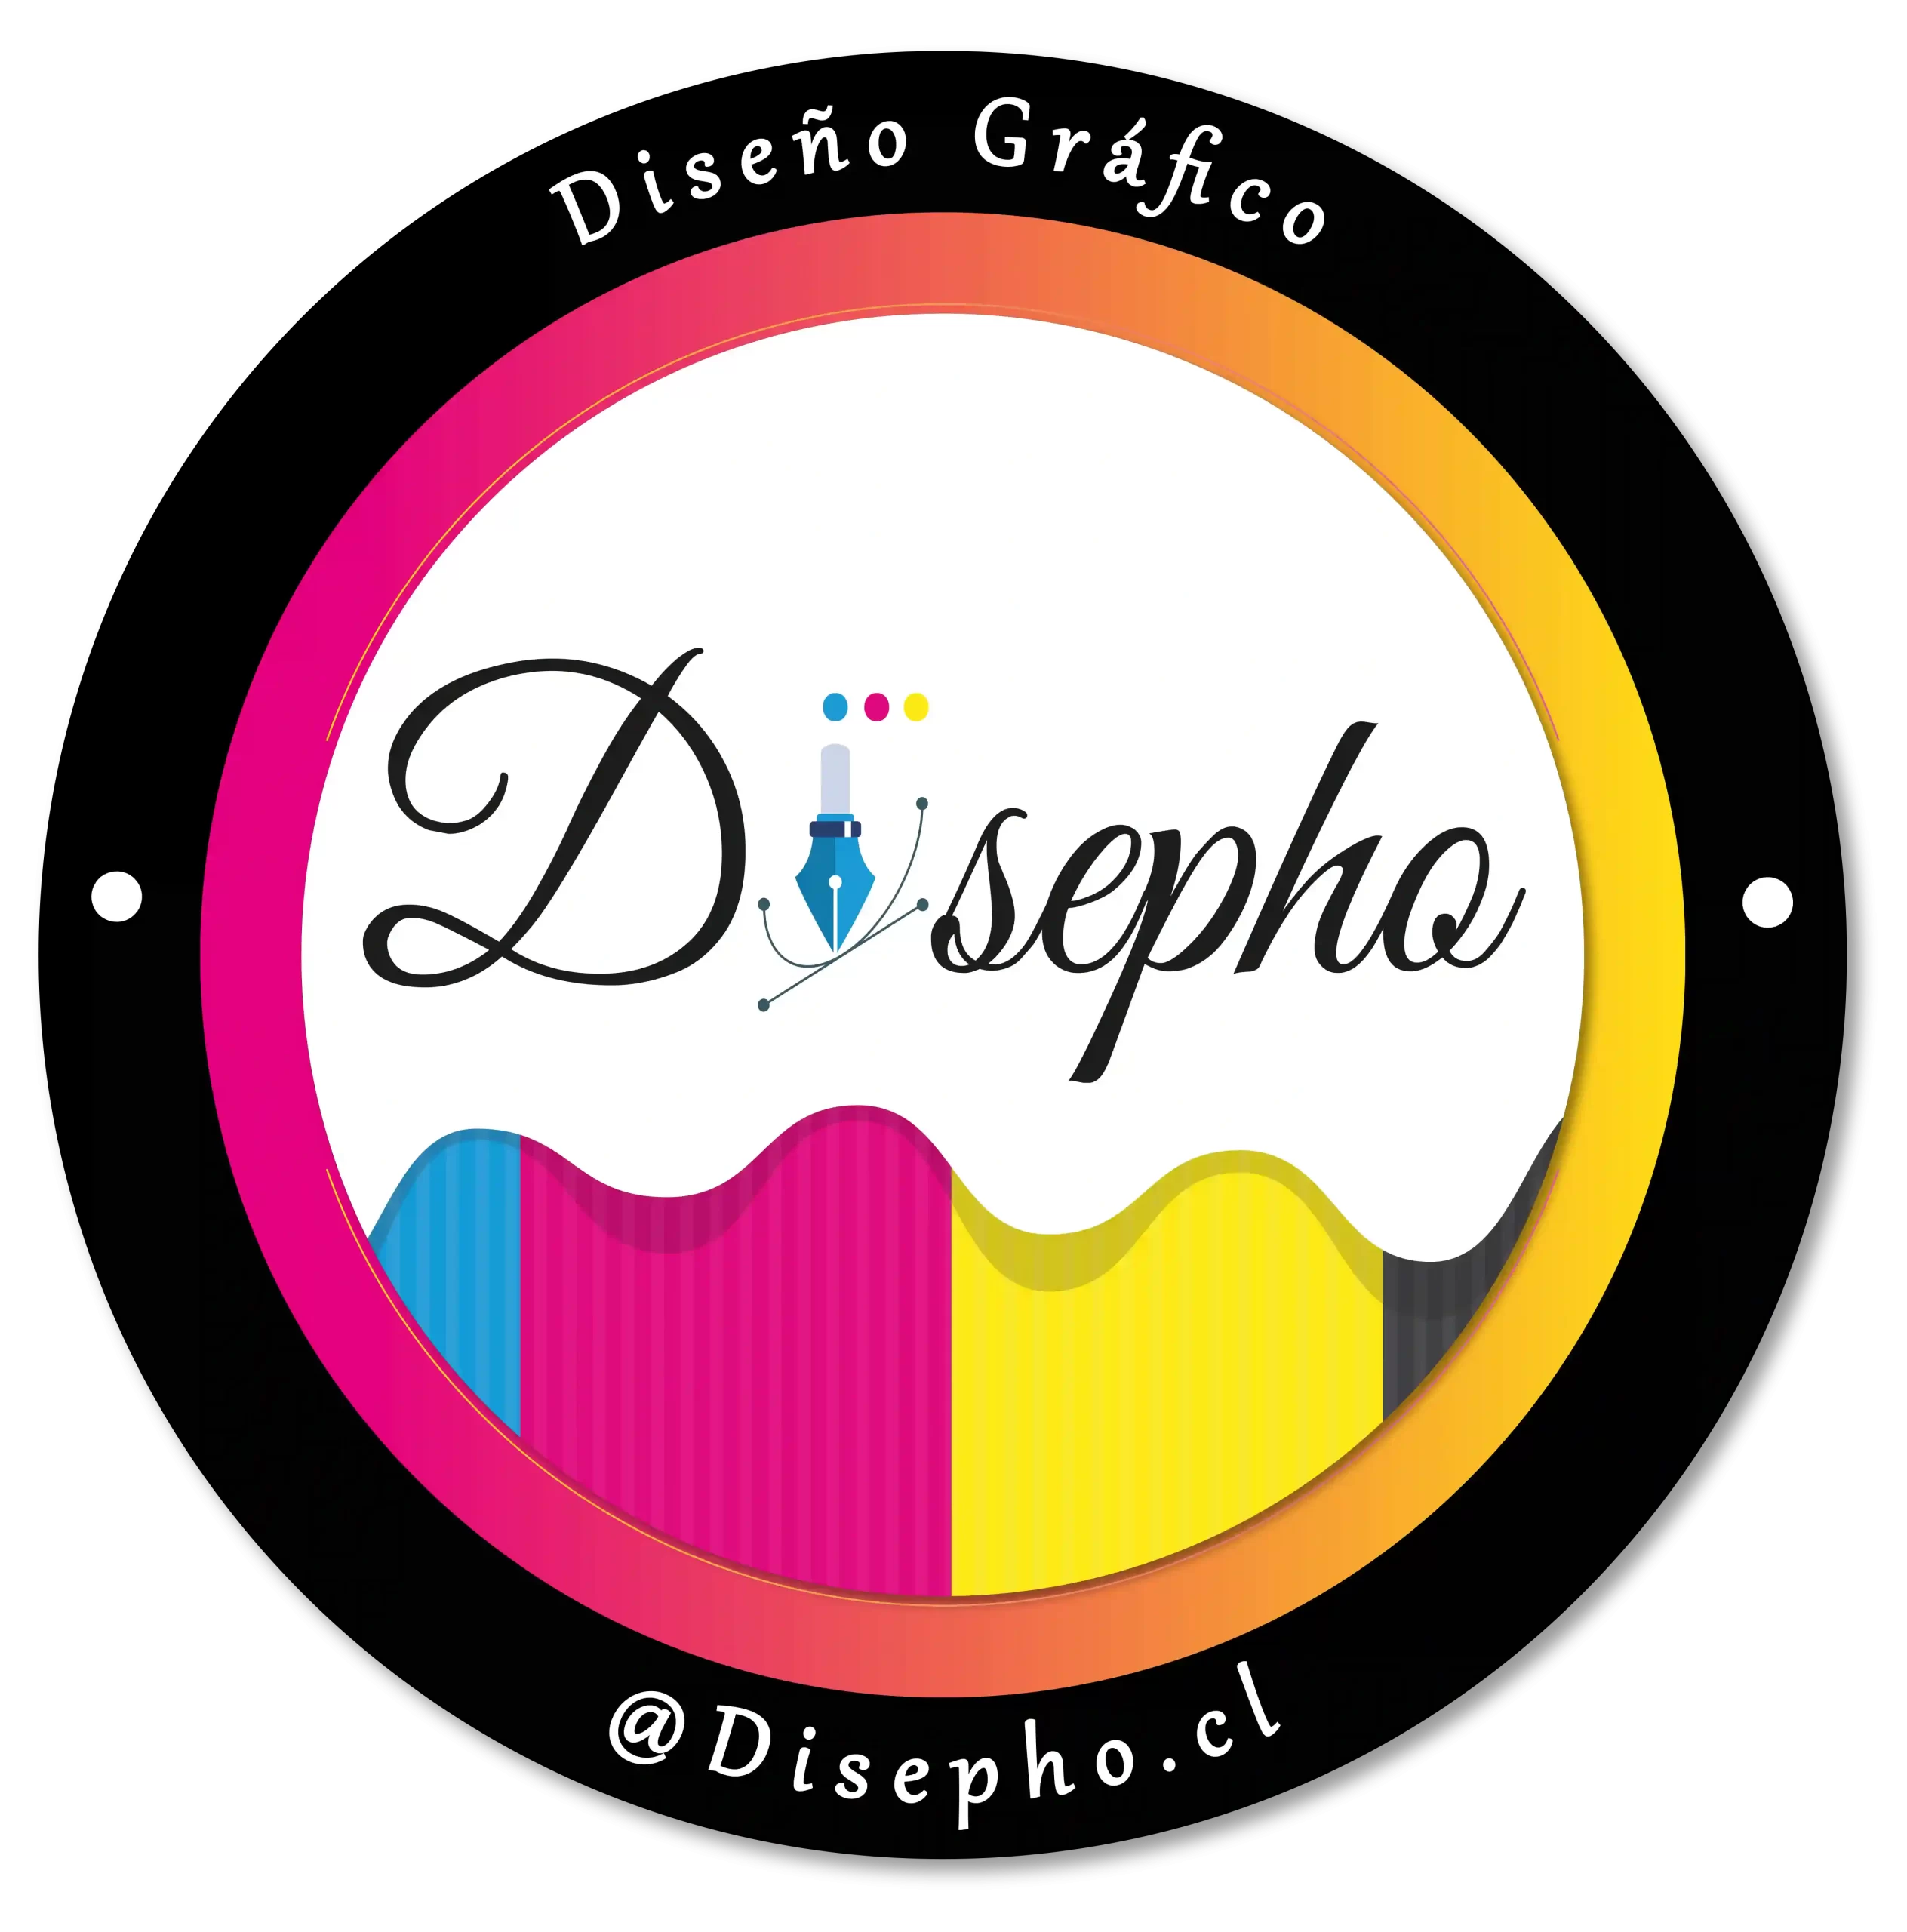 Disepho